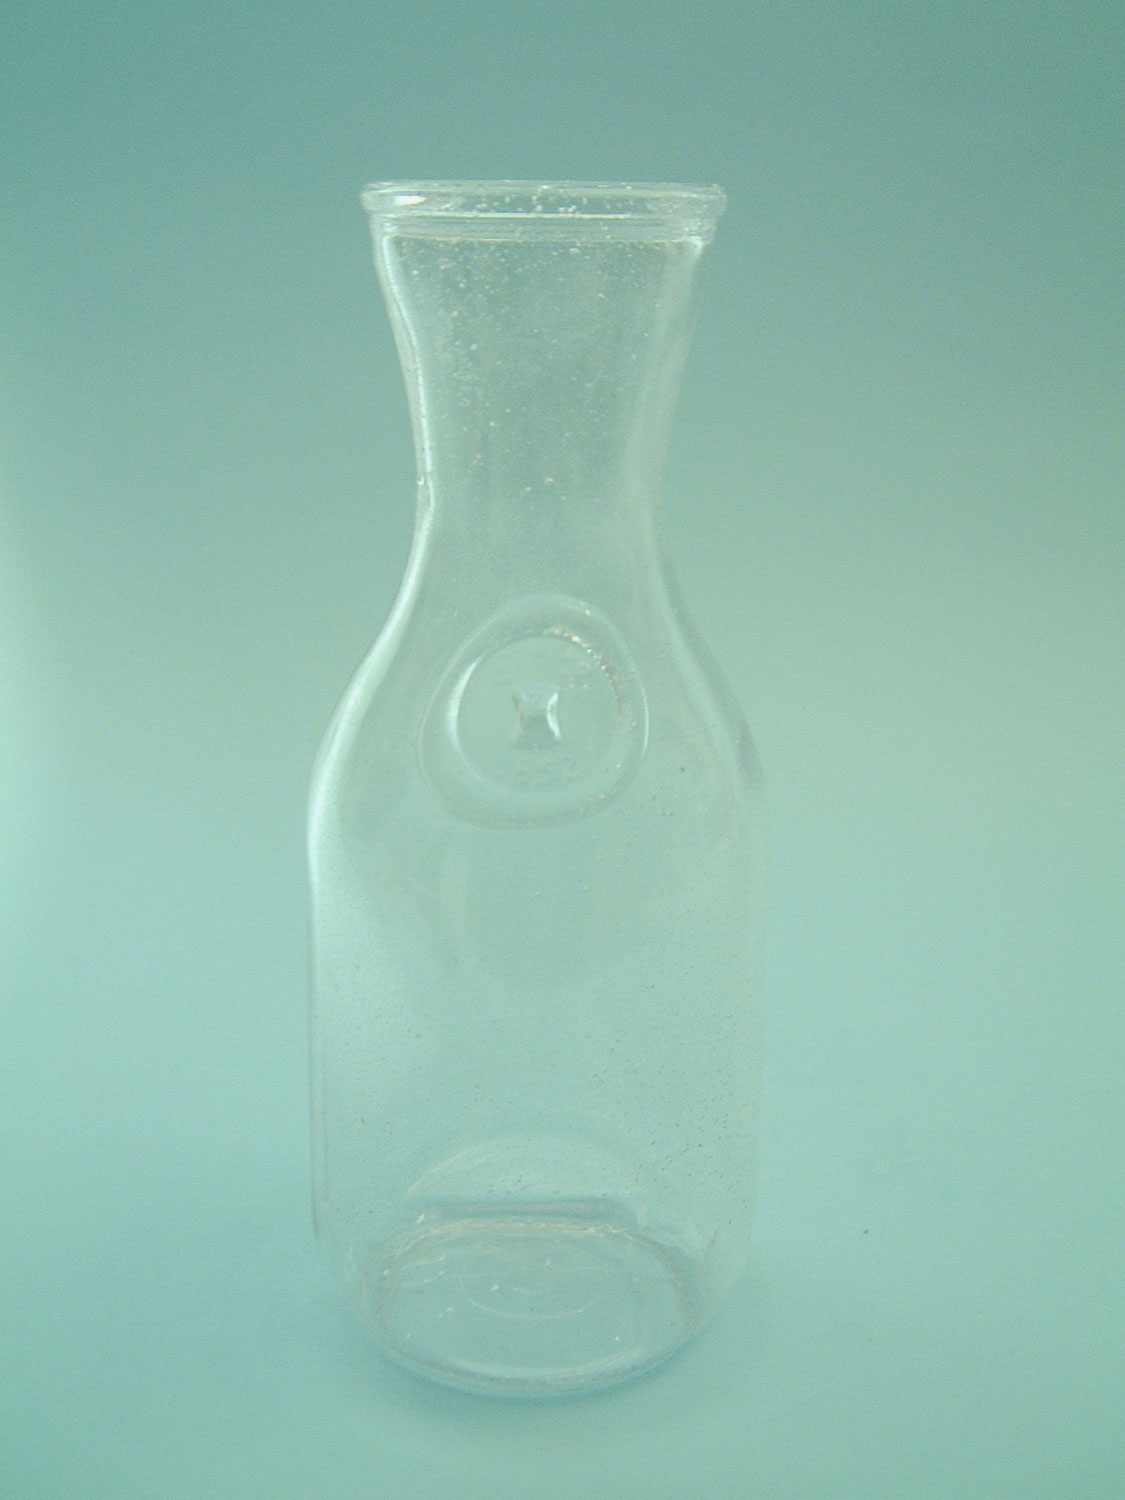 Film/video suikerglas. Kalifornische Karaf 1 Liter, Size: 24,5 x ø 10 cm.